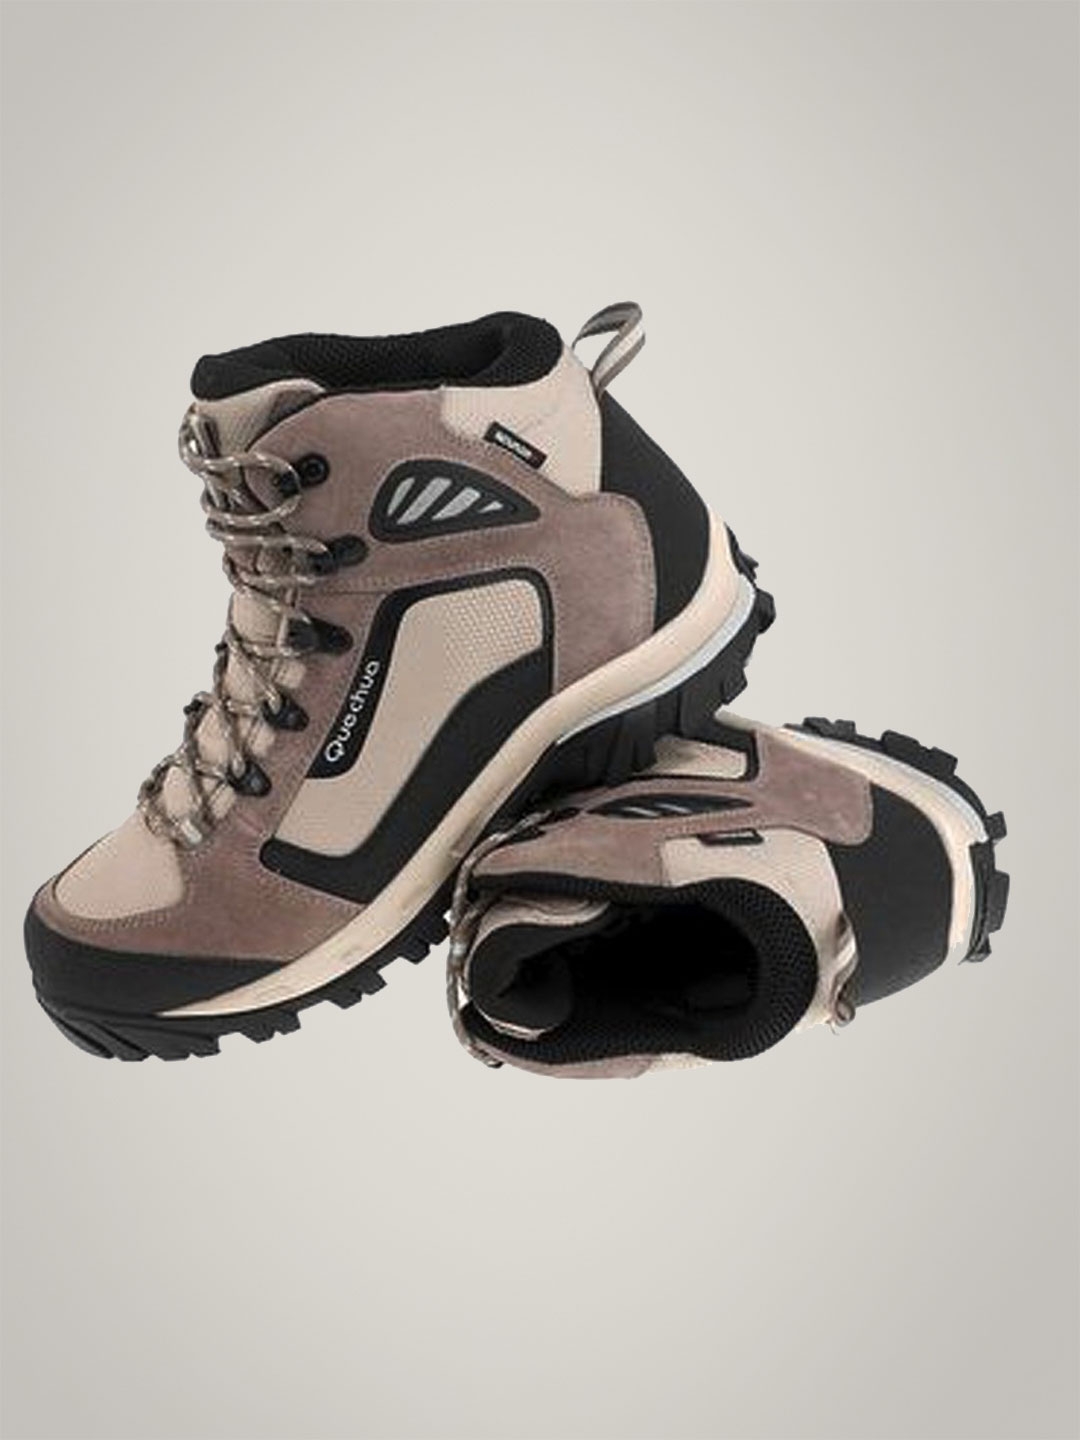 Buy Men's Waterproof Trekking Boots - TREKKING 100 ONTRAIL Grey Online |  Decathlon